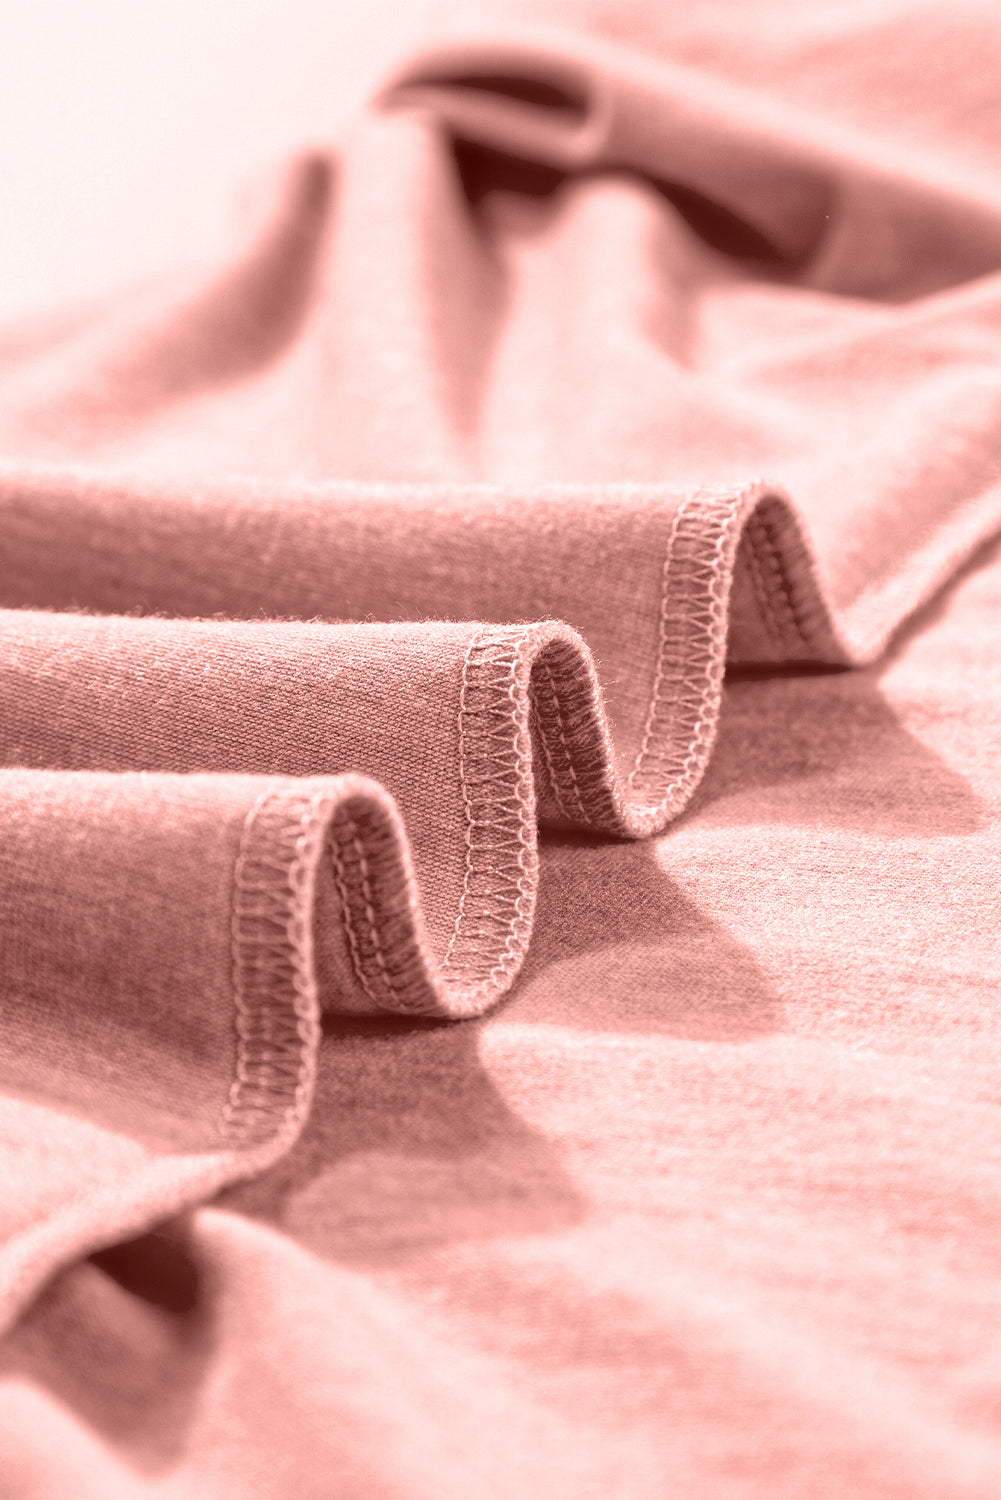 Rose Pink Center Seamed Roll Sleeve T-shirt Dress